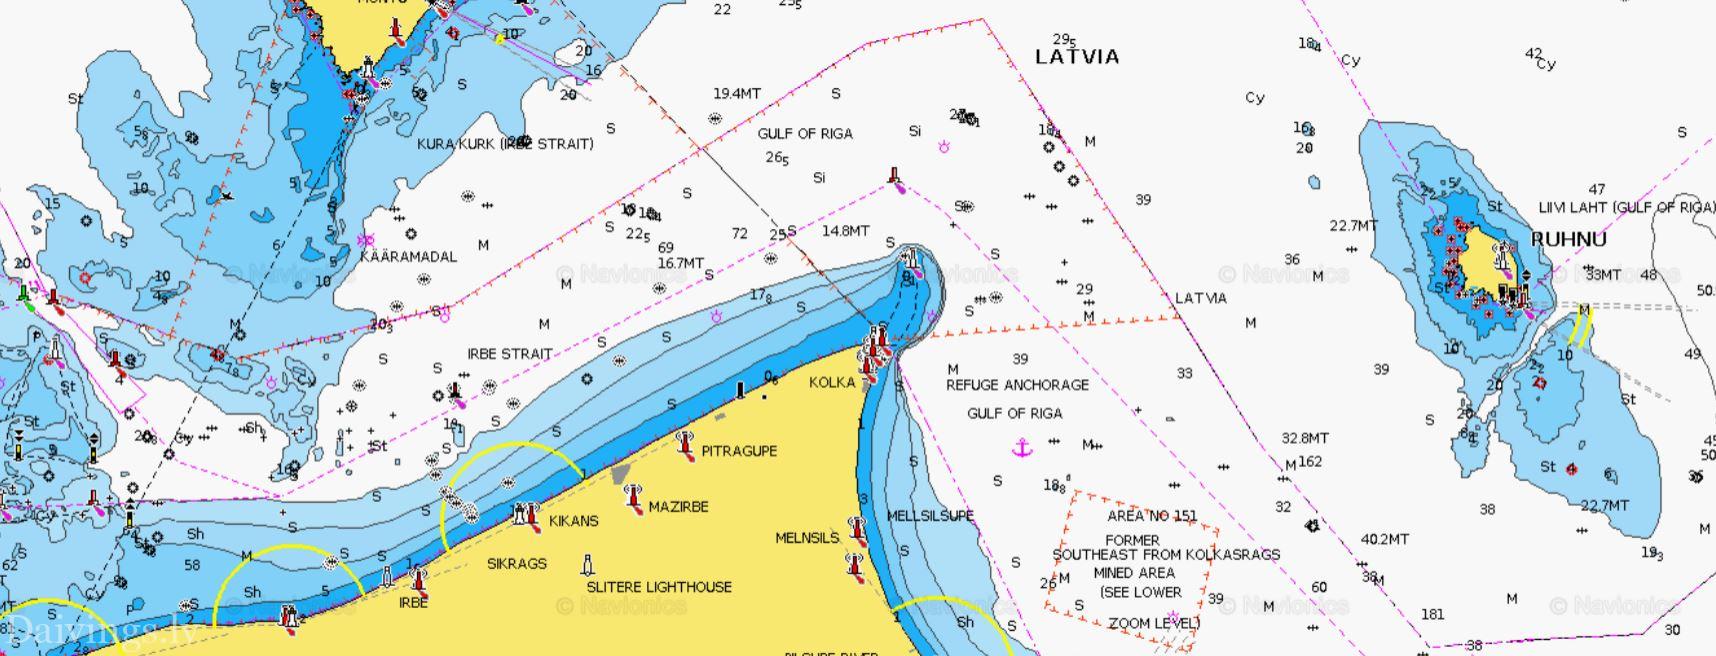 Lettiska hydrografer utför djupmätningar med en motorbåt och ett sidoavbildnings- och enkelstråleekolod